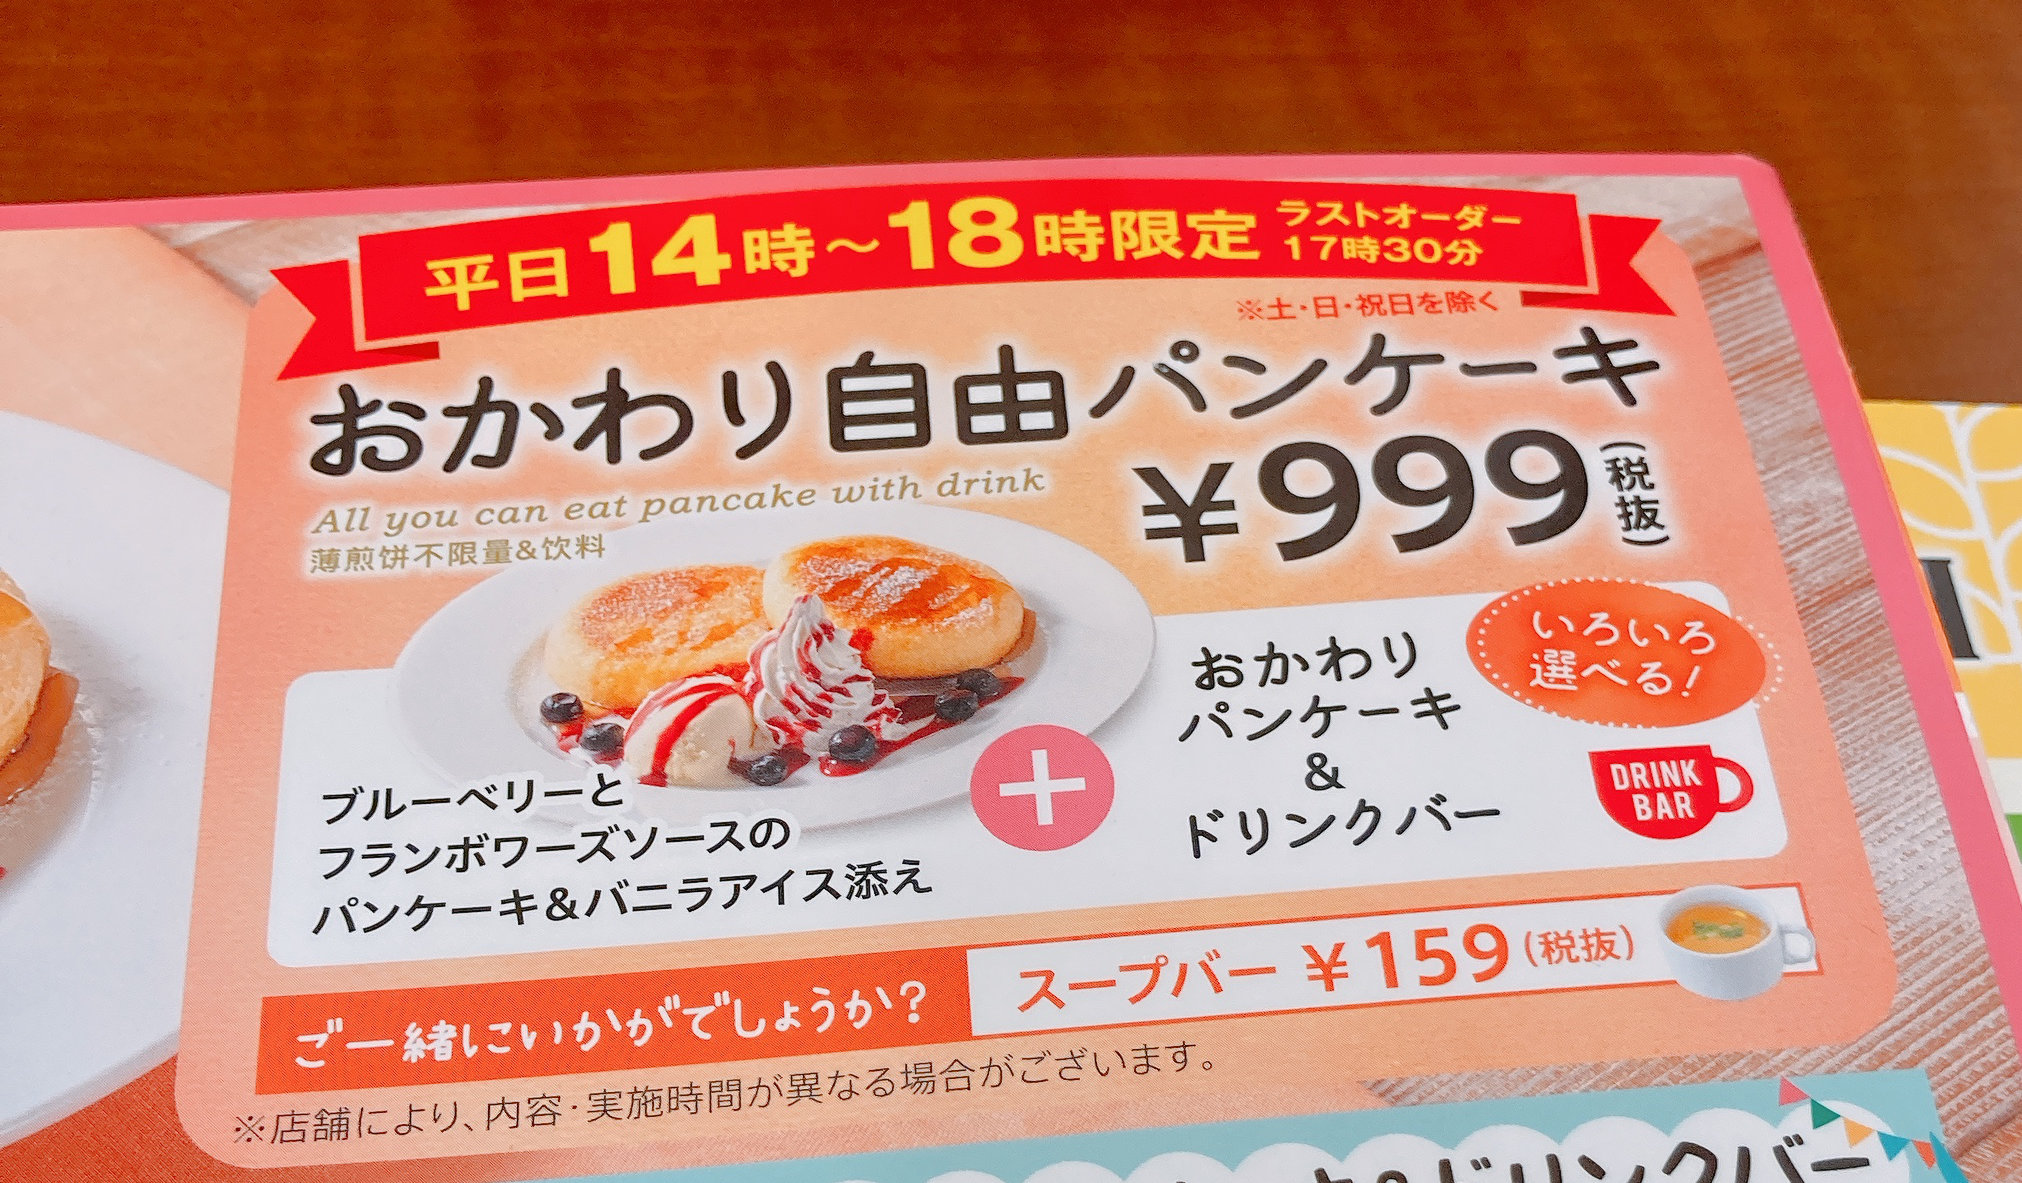 コスパ検証 グラッチェガーデンズの おかわり自由パンケーキセット 税別999円 はお得なのか 実際に利用してみた ロケットニュース24